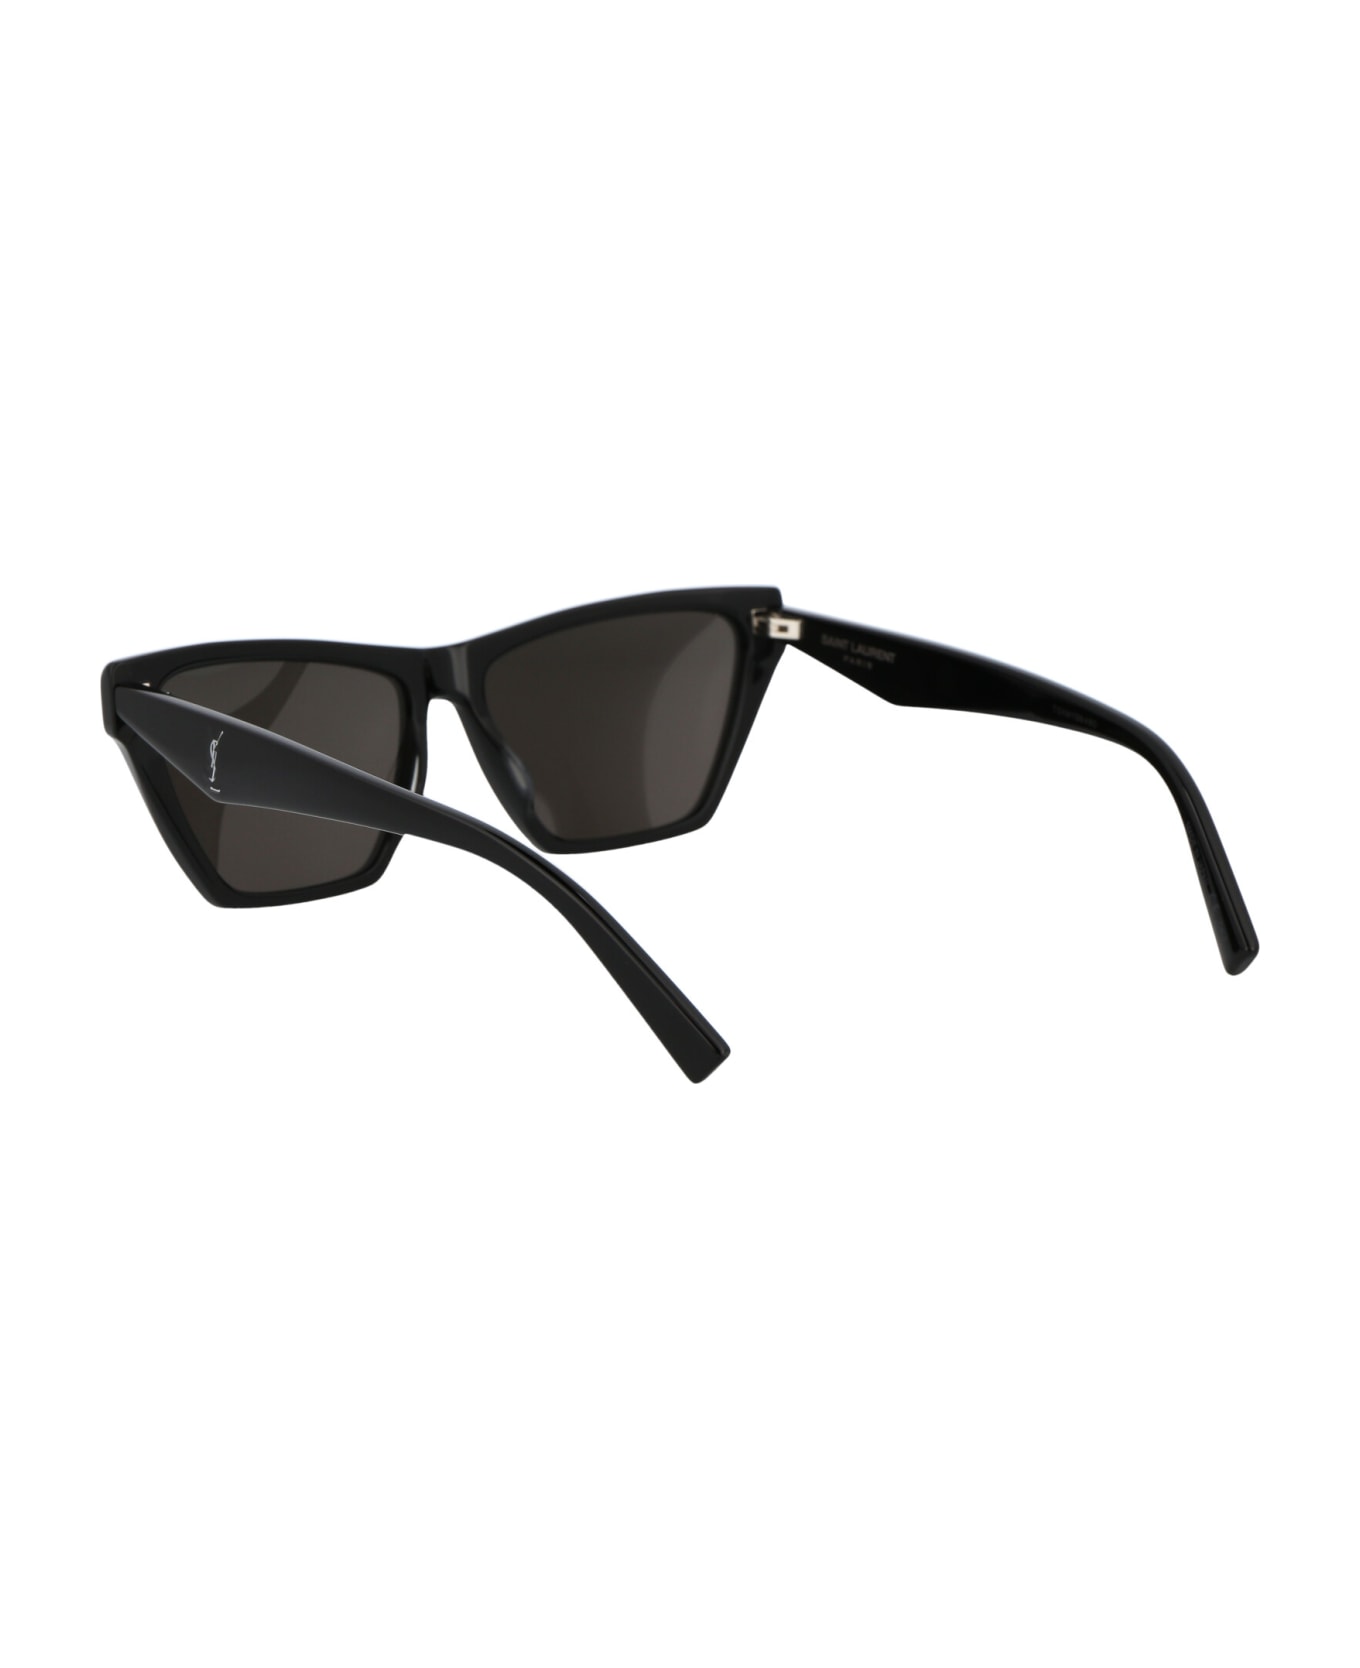 Saint Laurent Eyewear Sl M103 Sunglasses - 002 BLACK BLACK BLACK